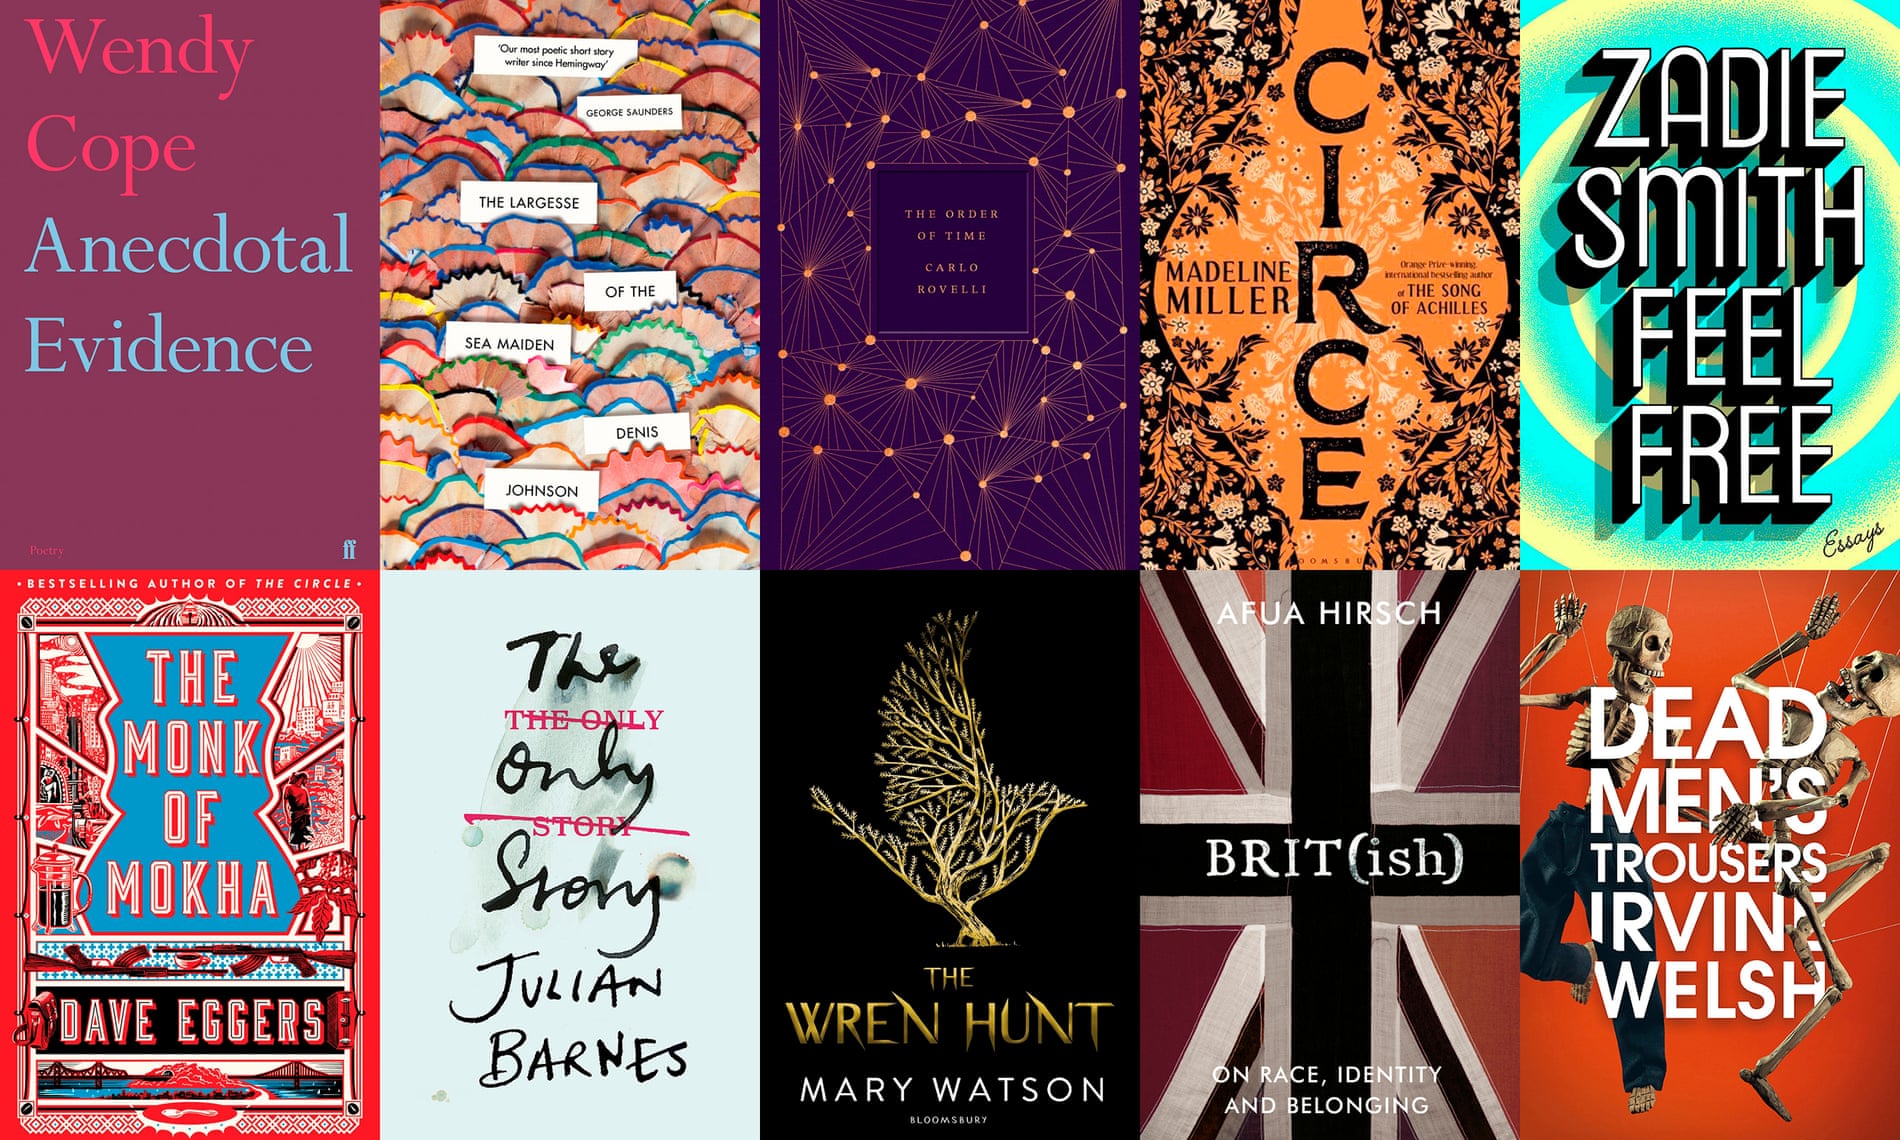 2018 in books: a literary calendar comp